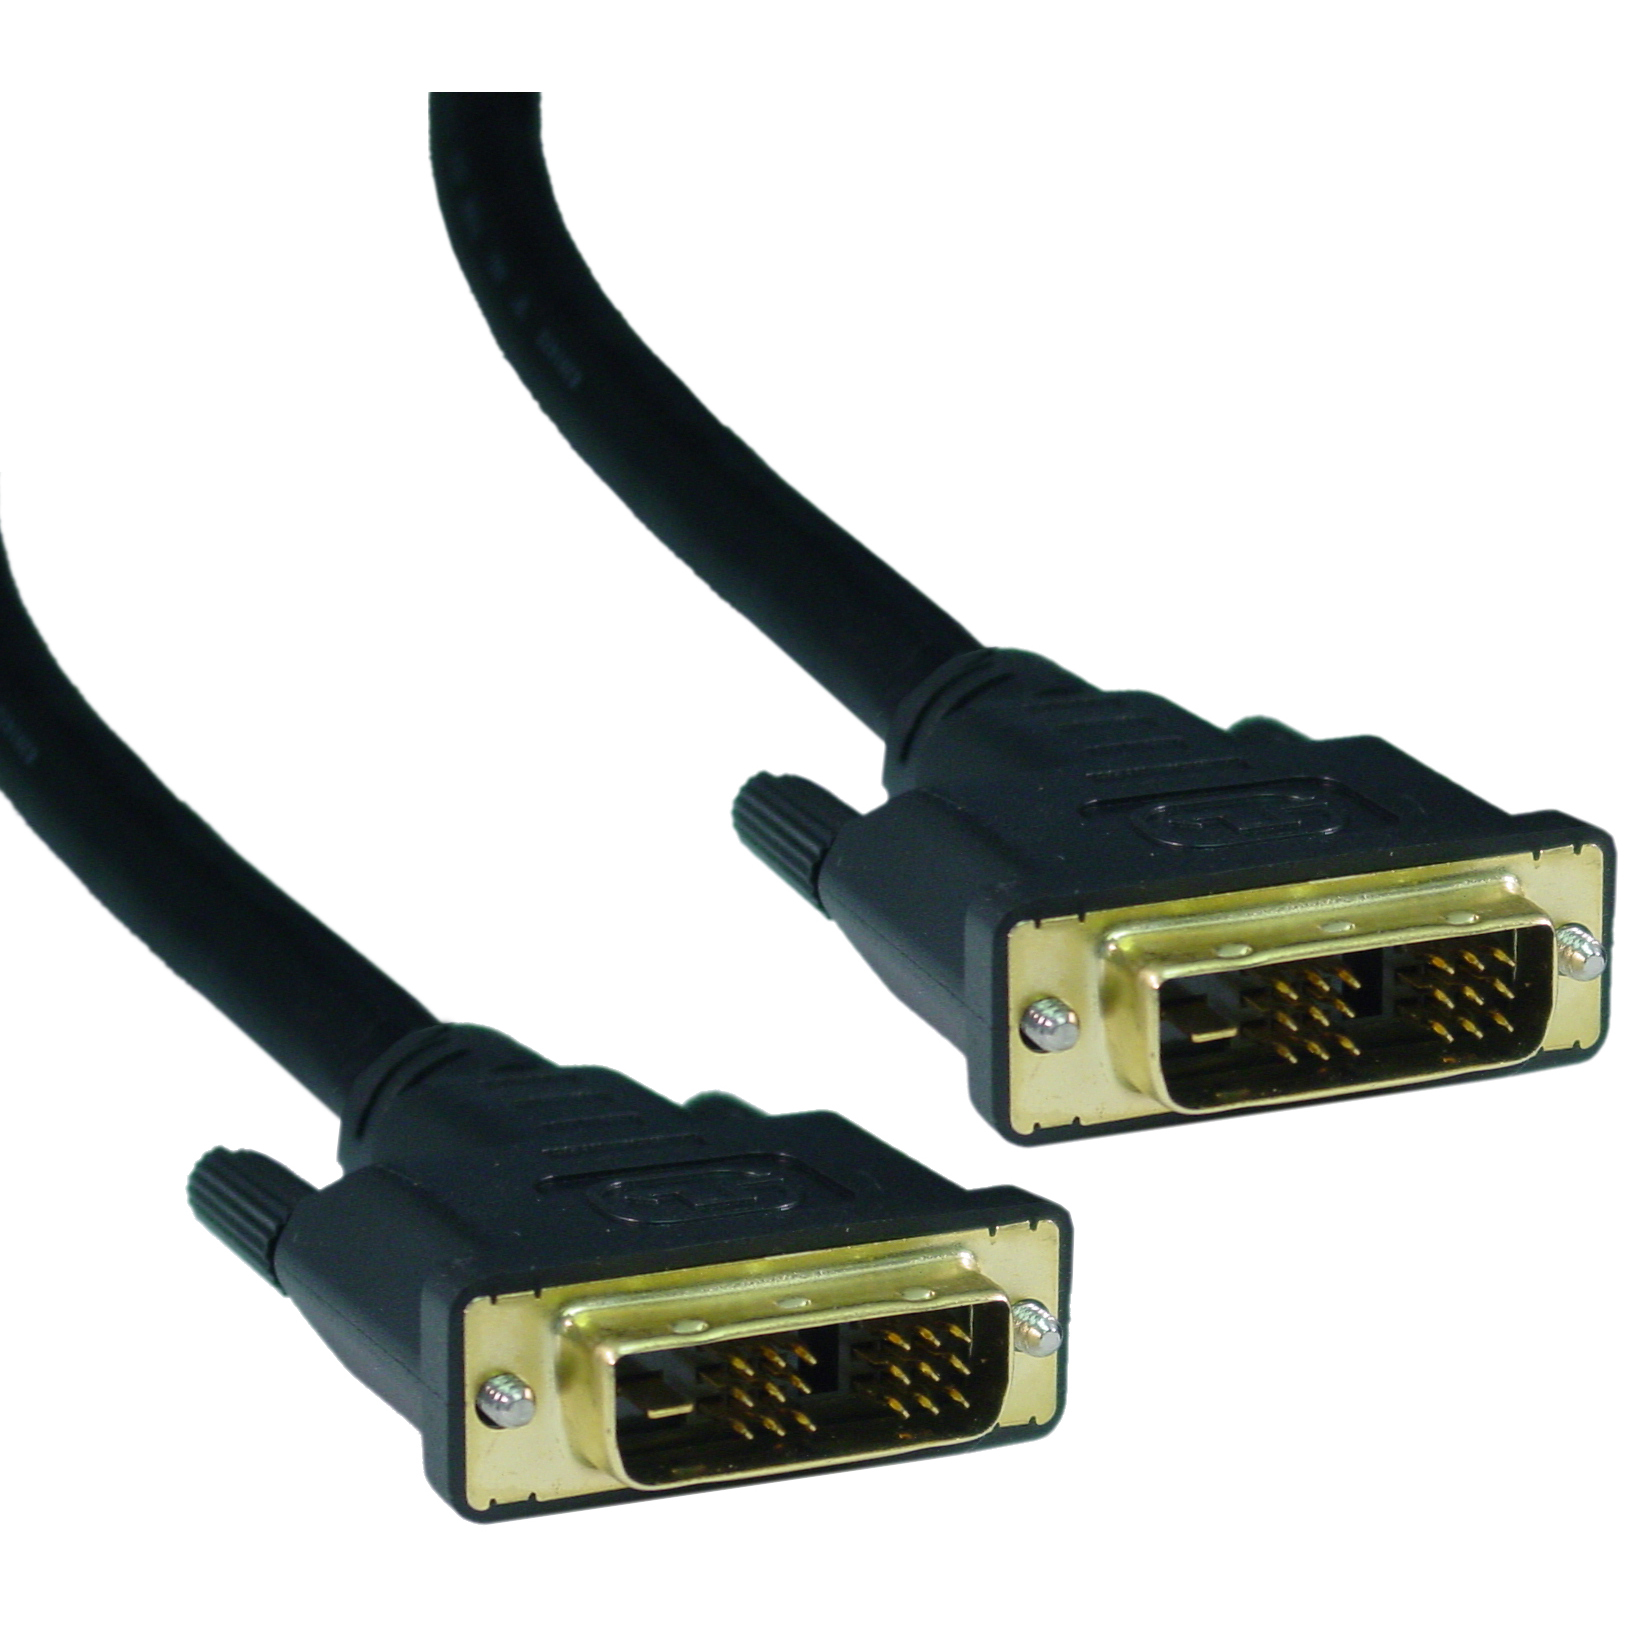 1 DVI-D Single Link Video Cable, 1080p